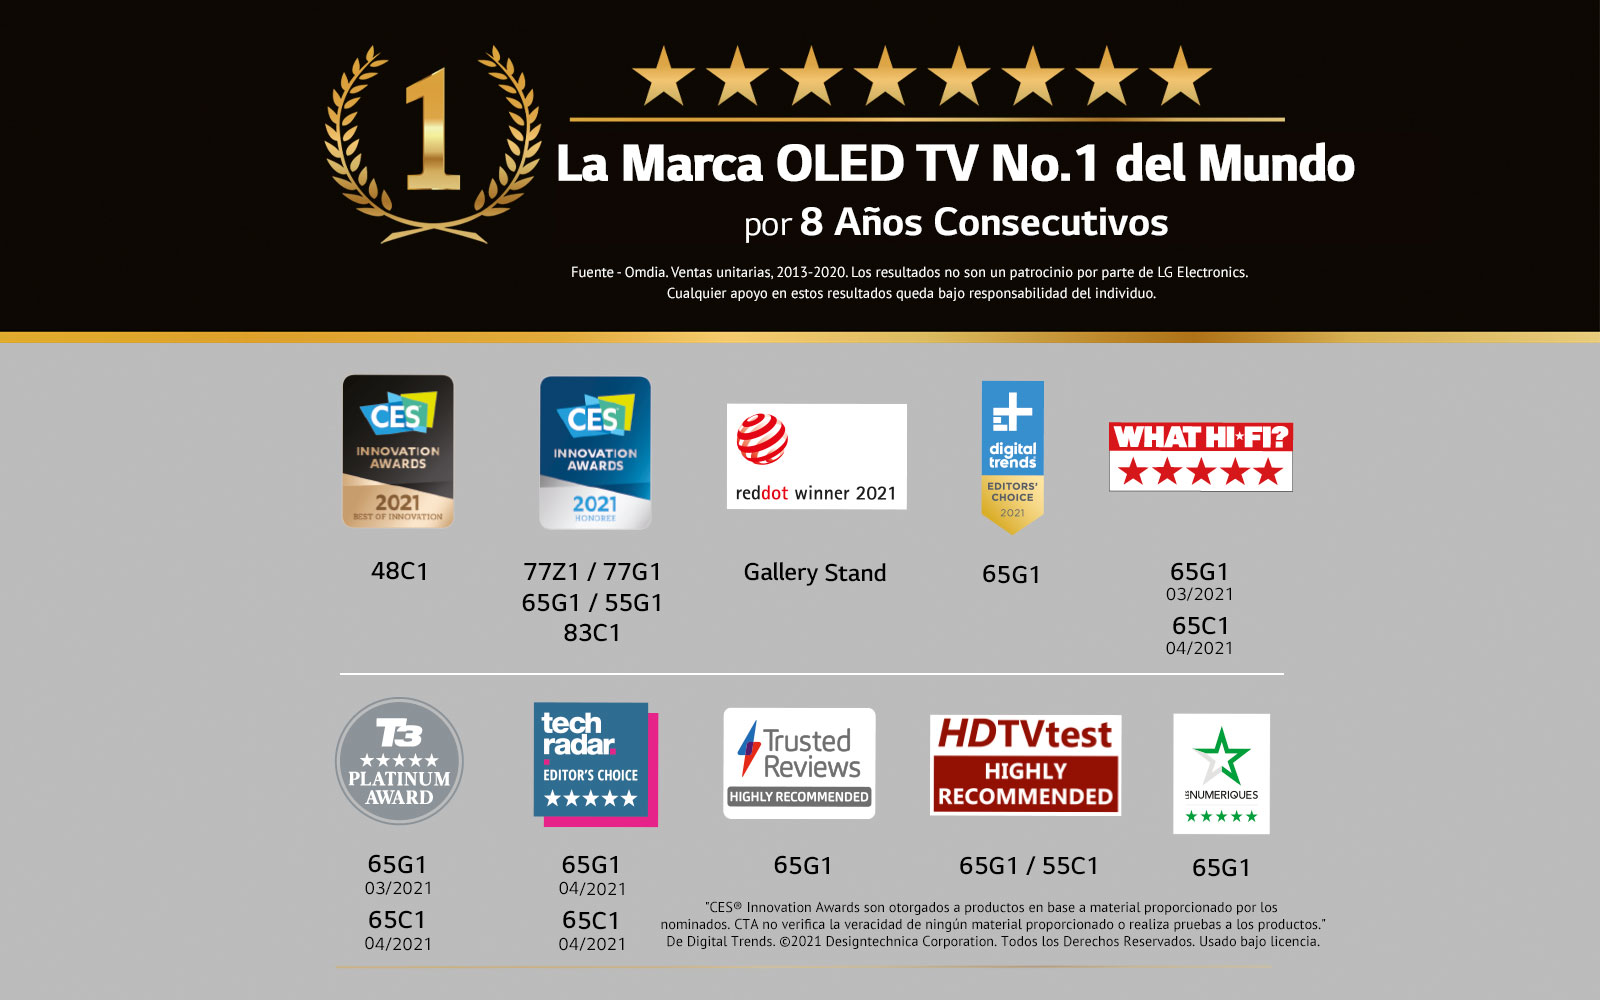 Gráfica que muestra los premios que ha recibido LG en 2021 con OLED TV, No 1 del mundo (2013-2021).